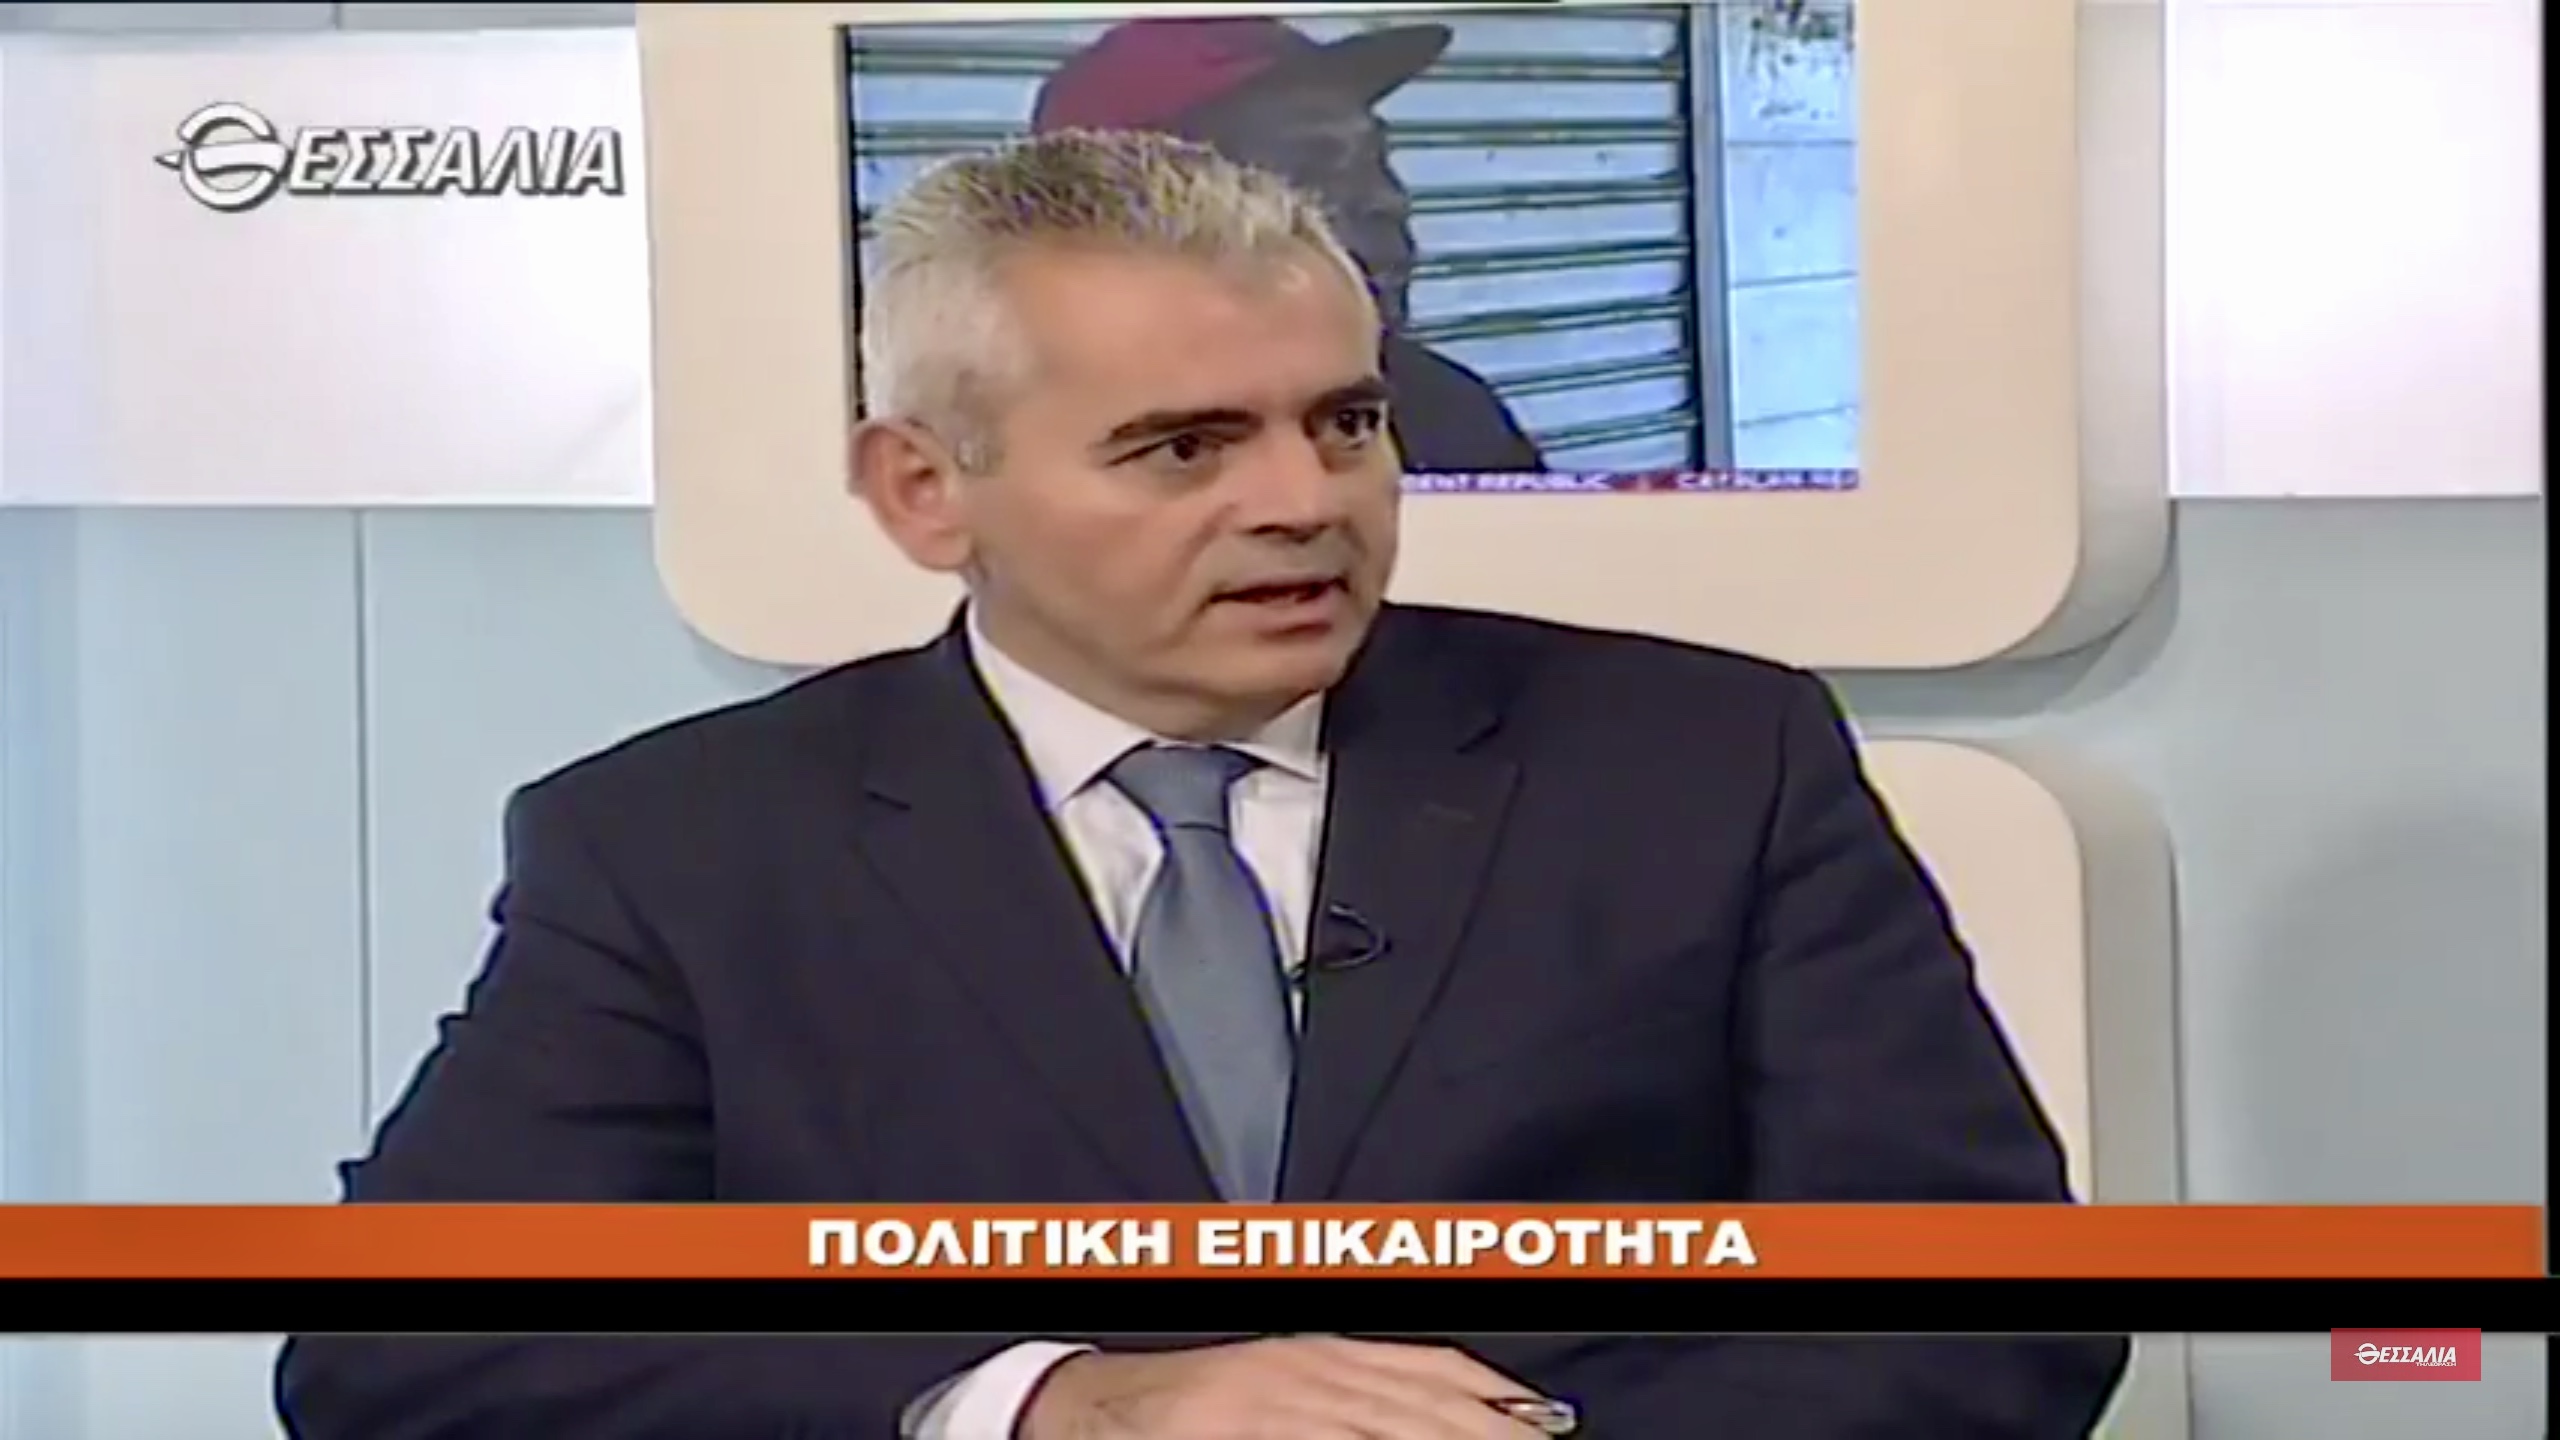  Χαρακόπουλος: Τα ζητήματα της ασφάλειας δεν έχουν ιδεολογικό πρόσημο